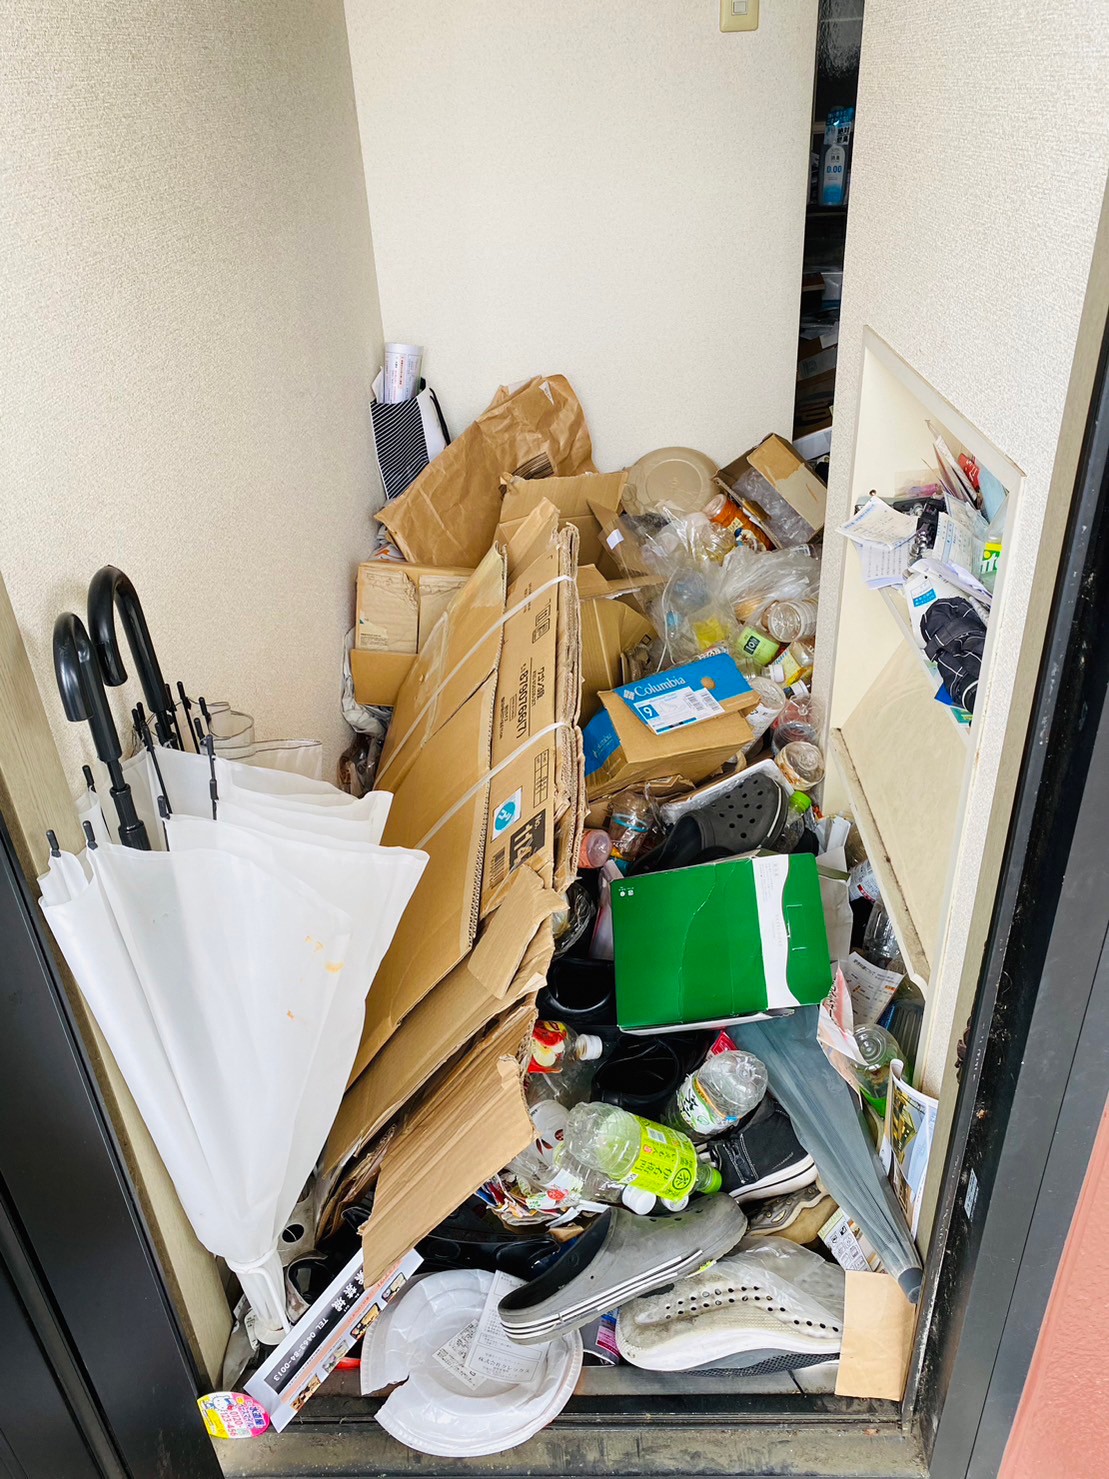 段ボール、壊れた傘、靴、ペットボトルなど家庭ゴミ1部屋分の回収前の状態